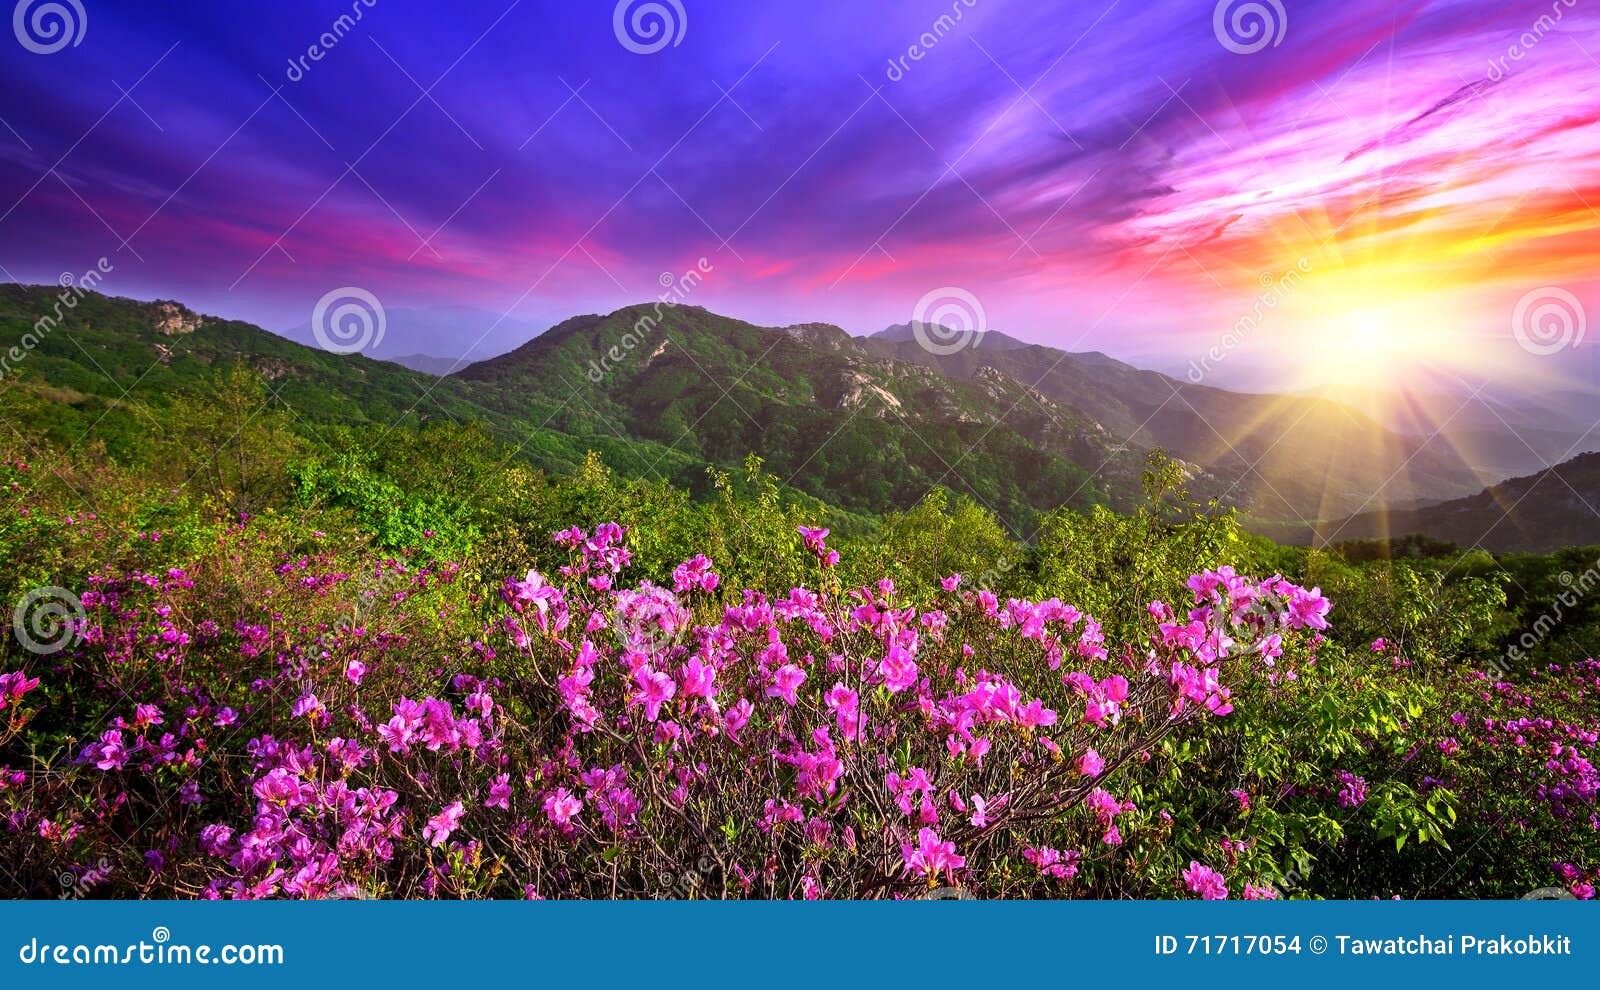 beautiful pink flowers on mountains at sunset, hwangmaesan mountain in korea